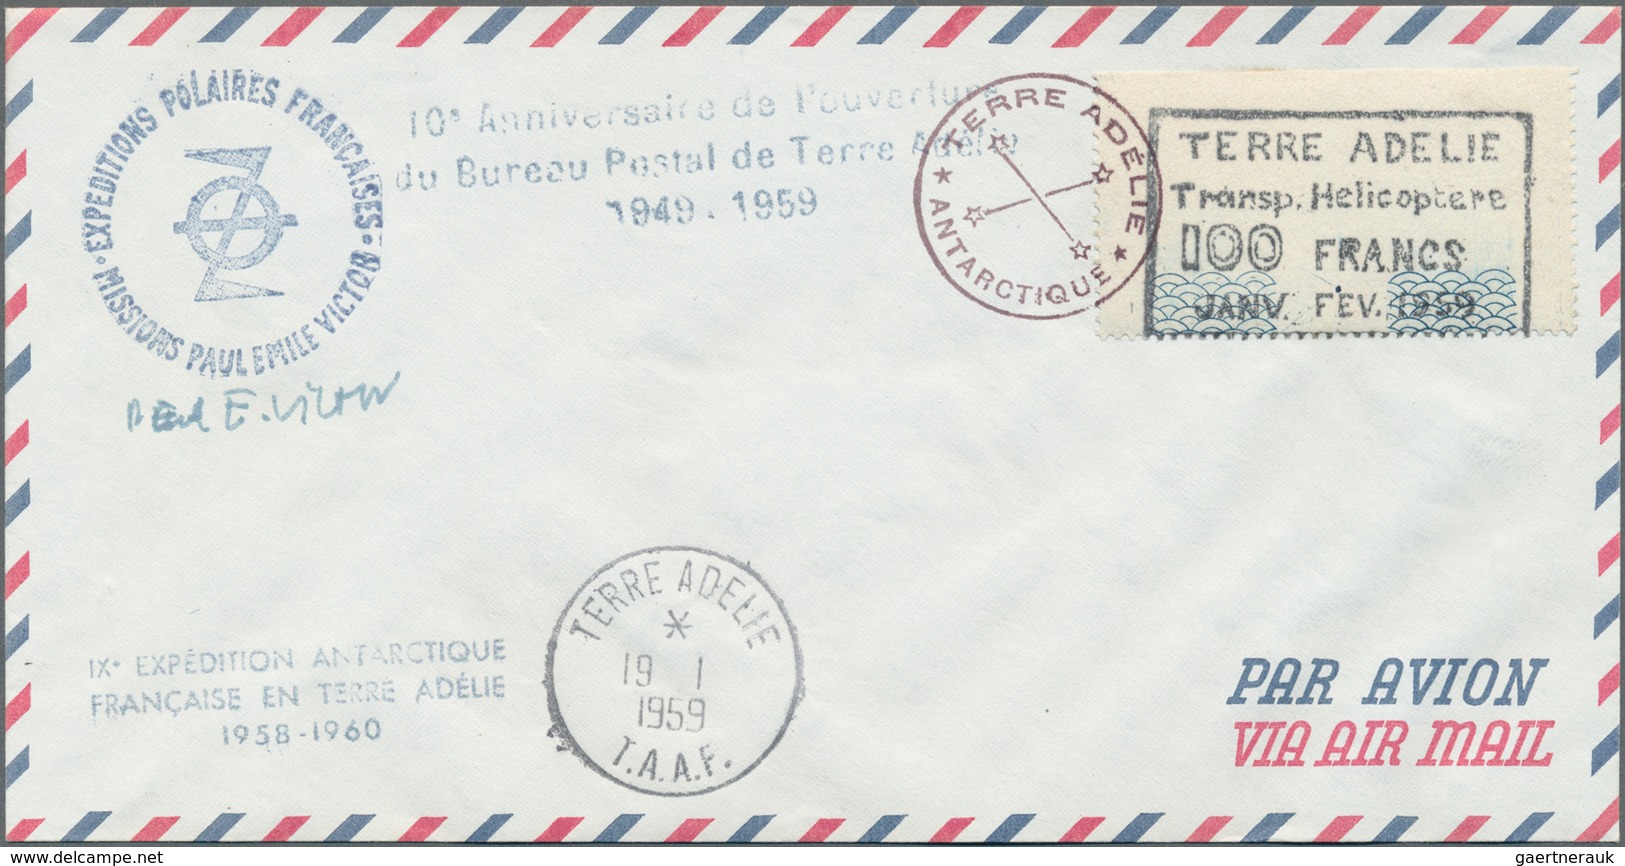 Französische Gebiete In Der Antarktis: 1959, Flight Vignette "Terre Adelie Transp. Helicoptere" 100 - Briefe U. Dokumente